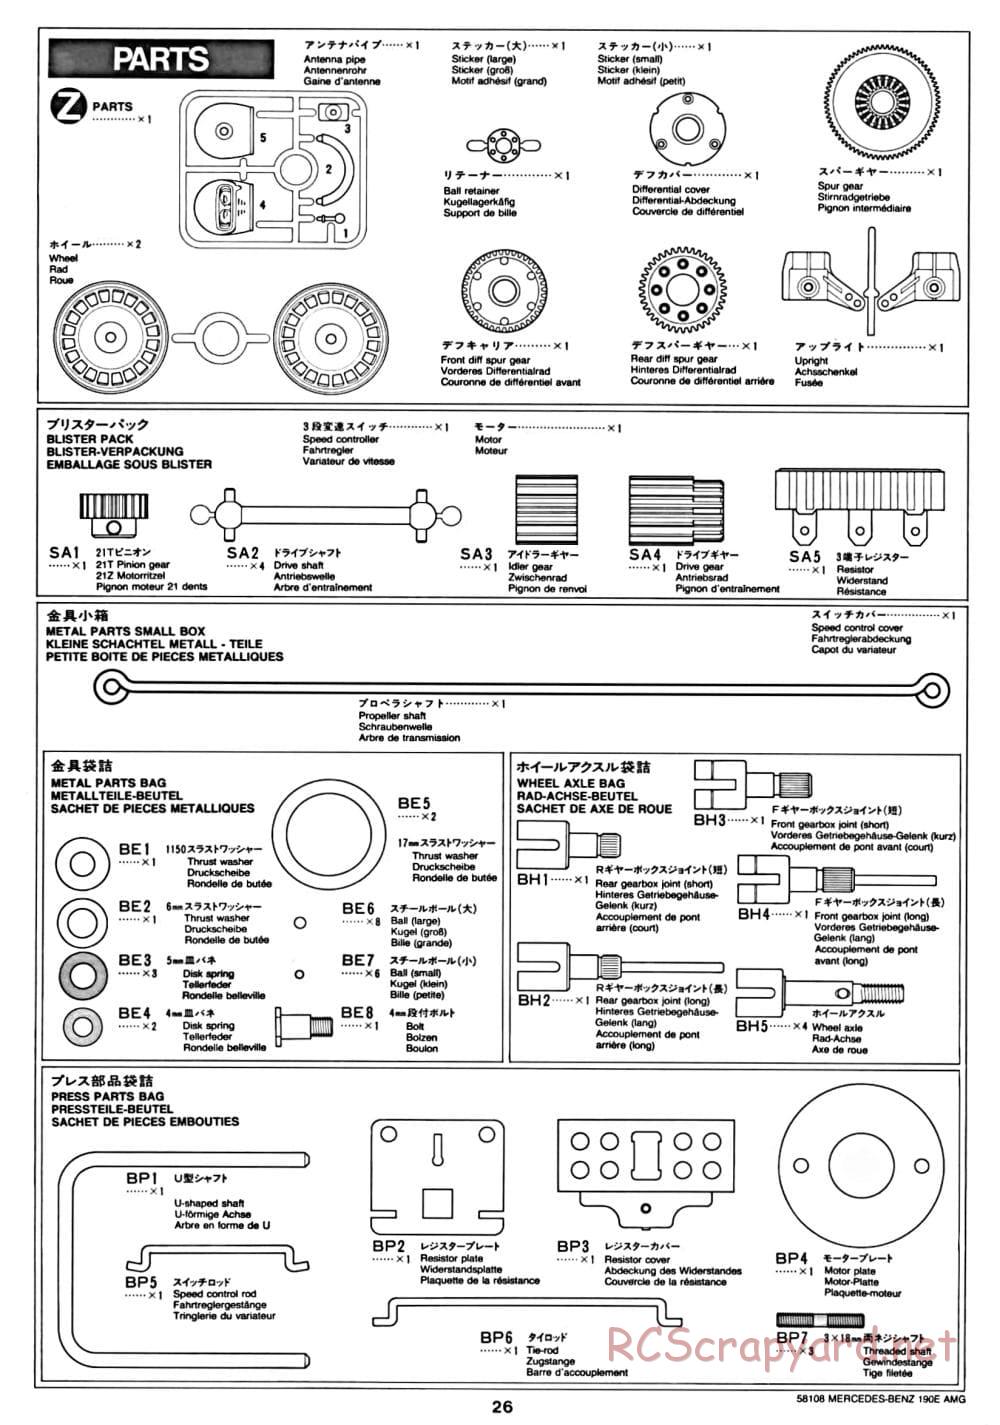 Tamiya - Mercedes Benz 190E Evo.II AMG - TA-01 Chassis - Manual - Page 26